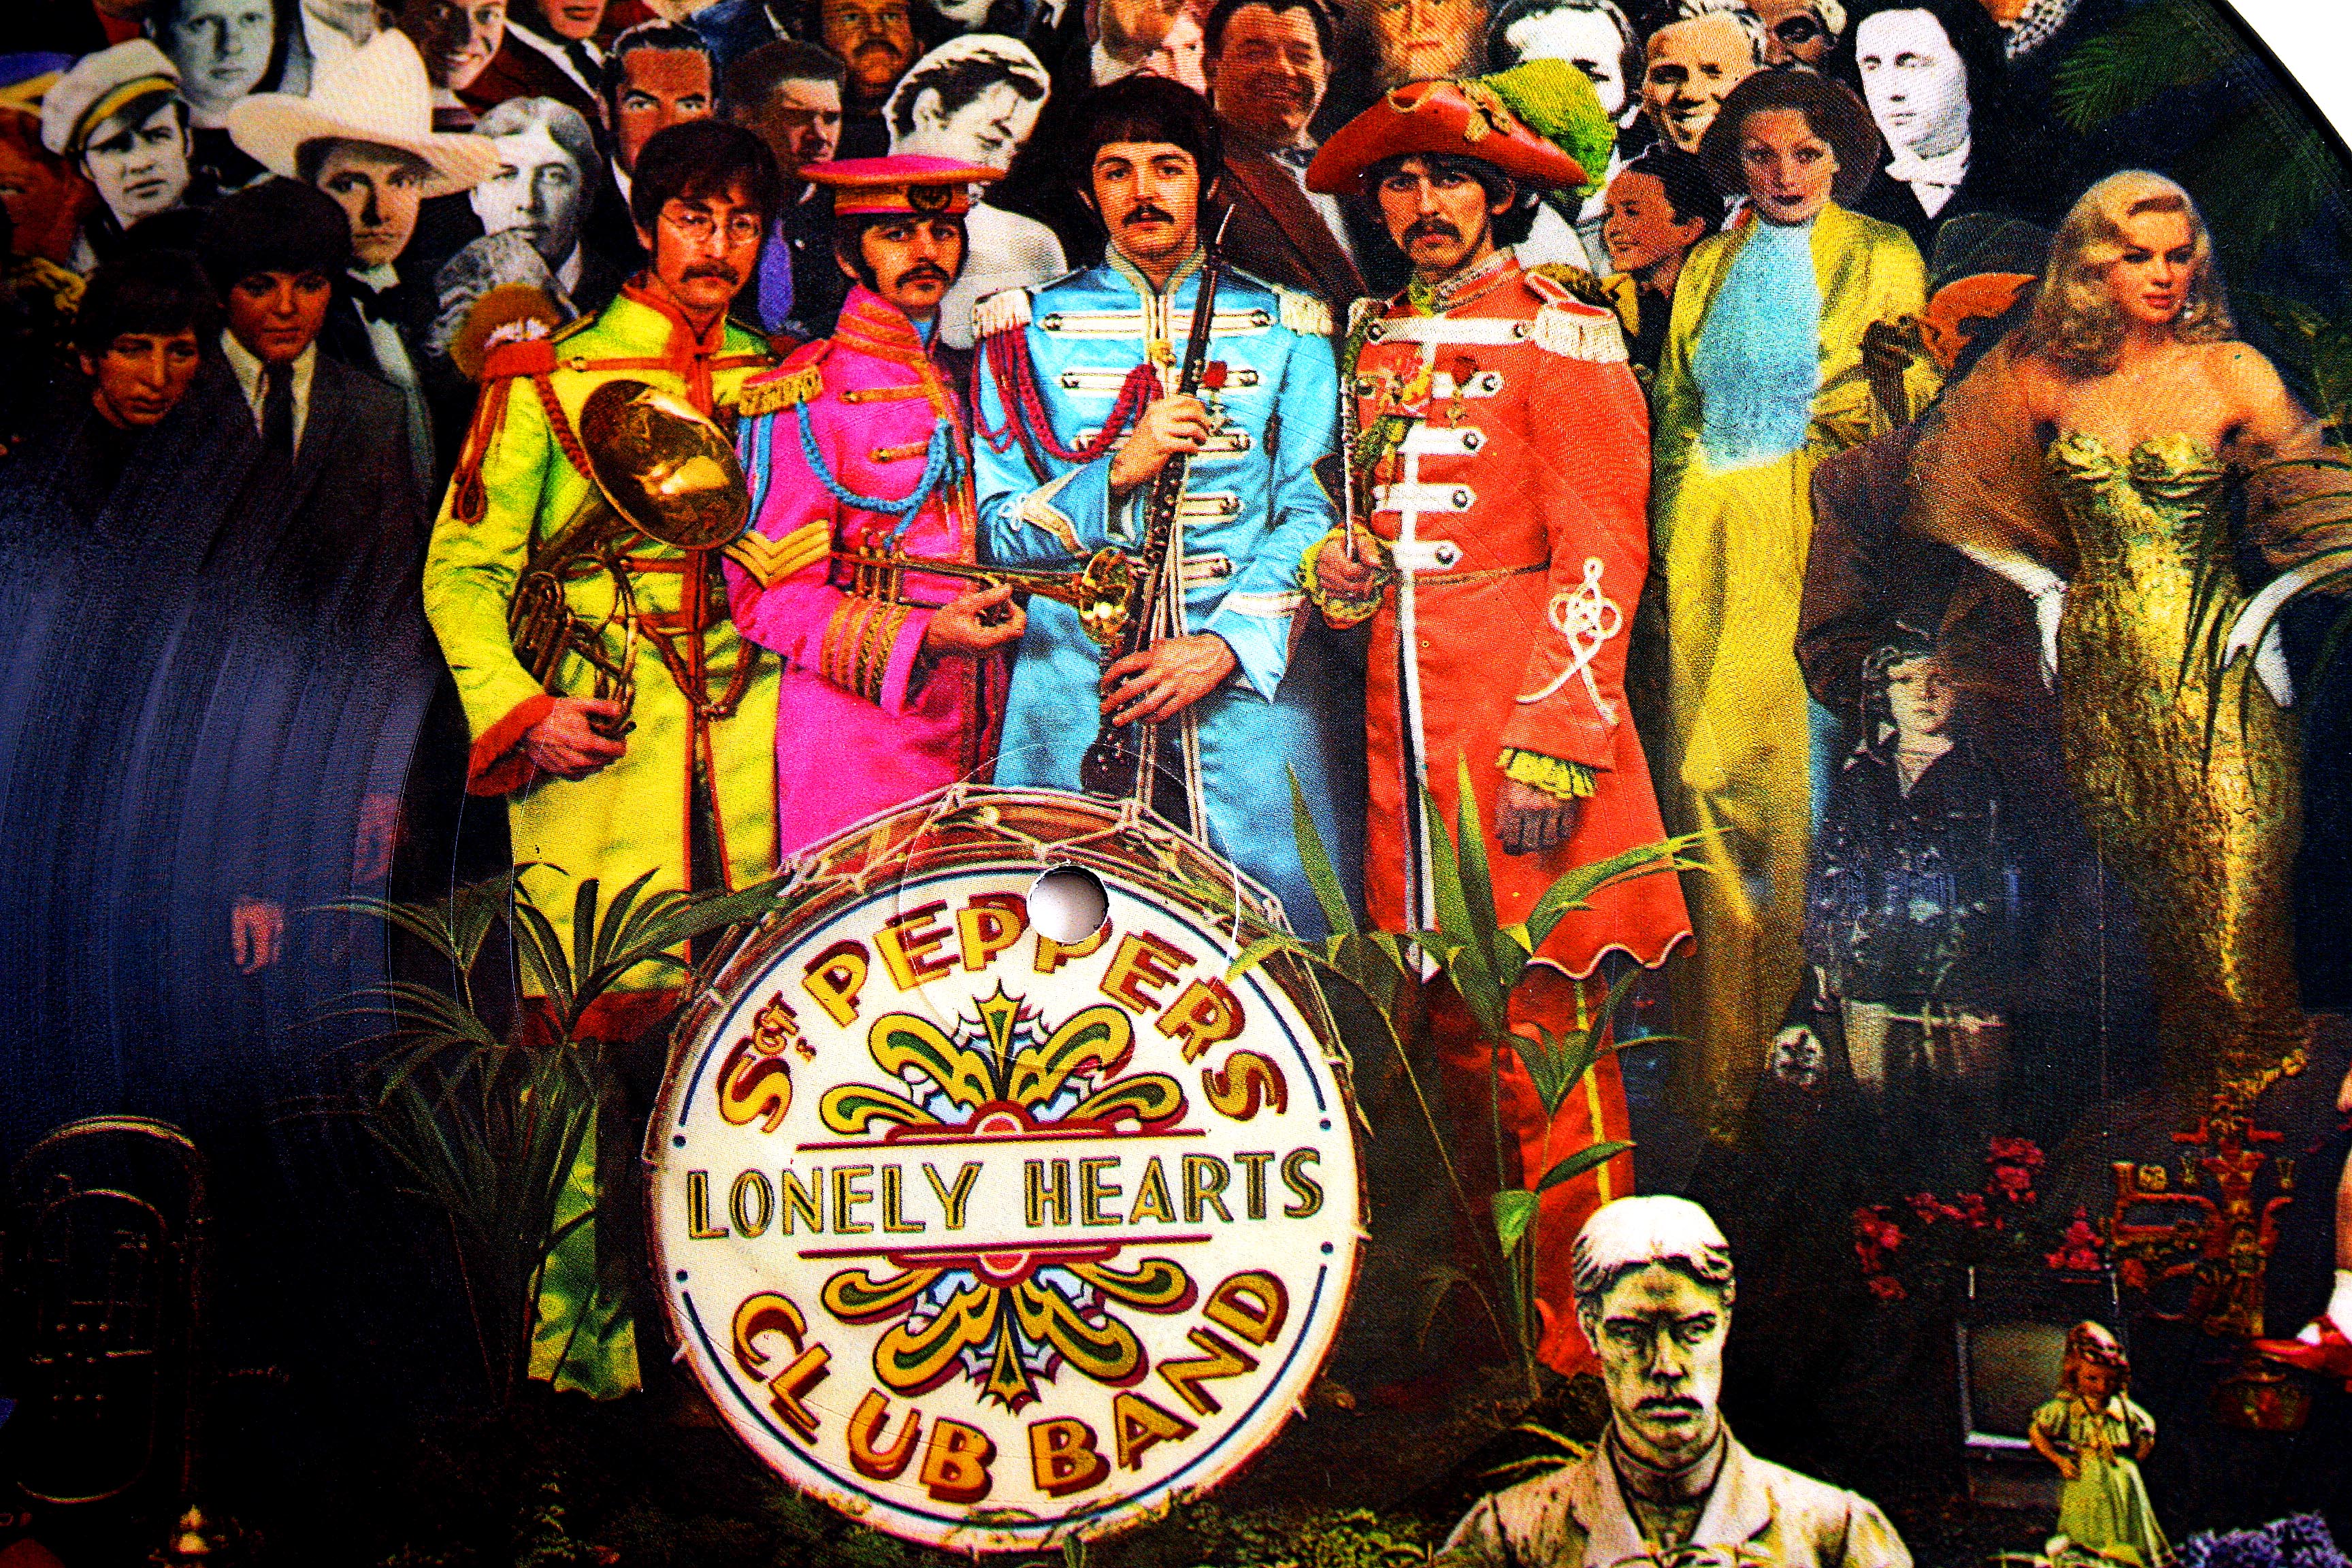 Sgt Pepper Wallpaper